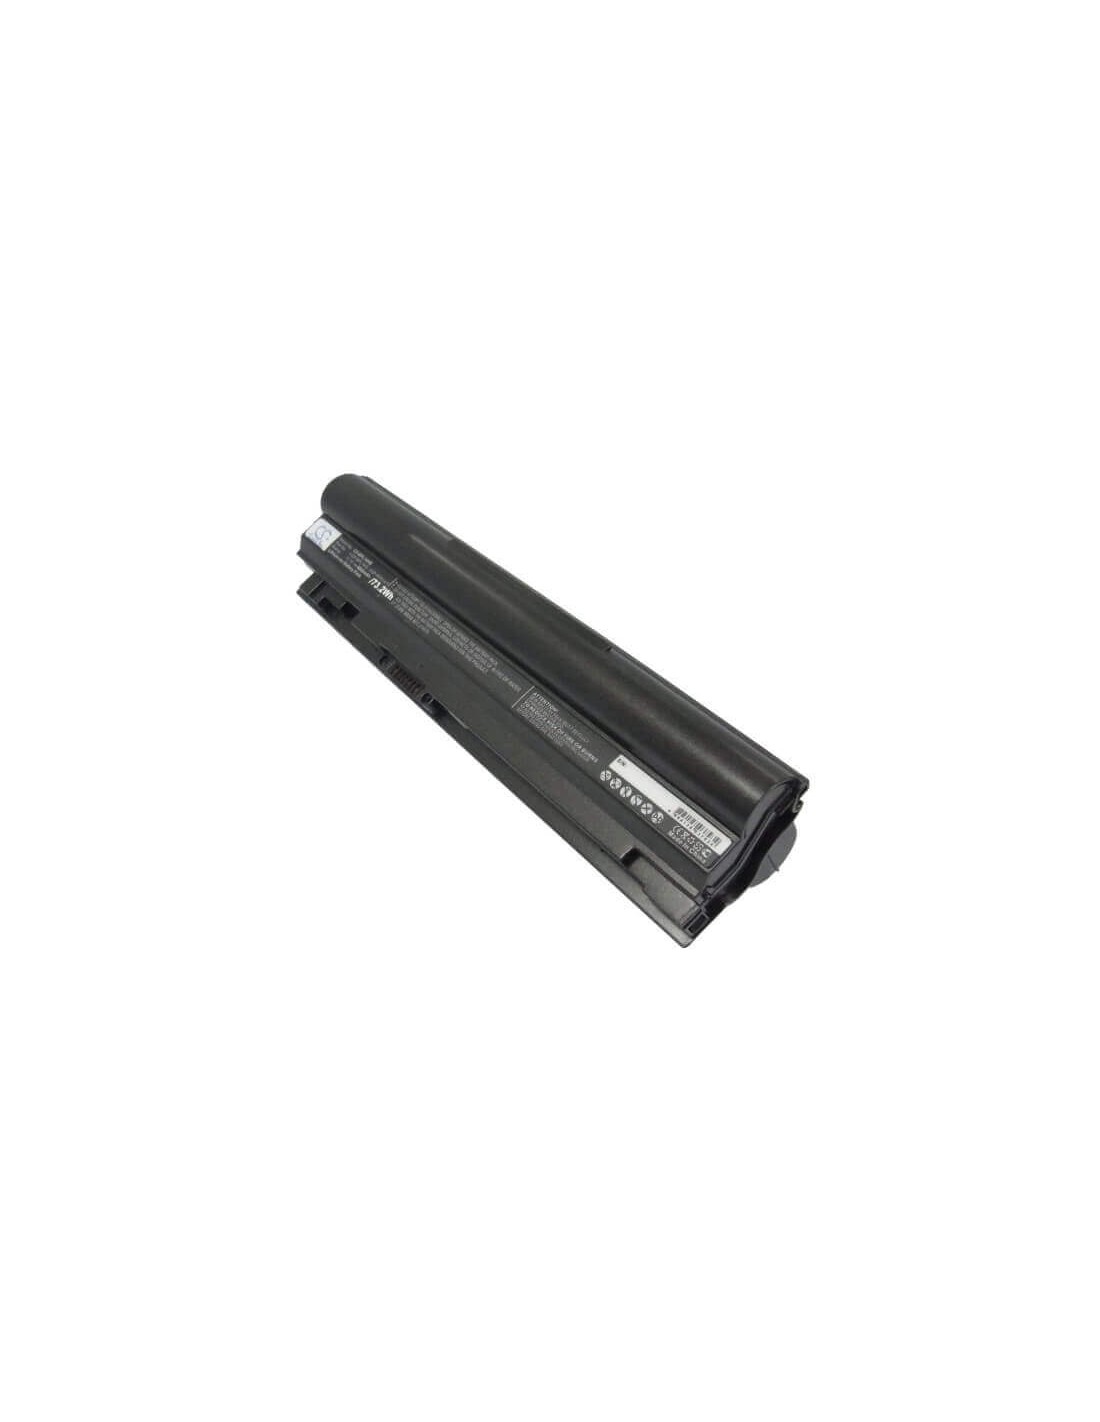 Black Battery for Sony Vaio Vgn-tt11m, Vaio Vgn-tt13/n, Vaio Vgn-tt190ein 11.1V, 6600mAh - 73.26Wh